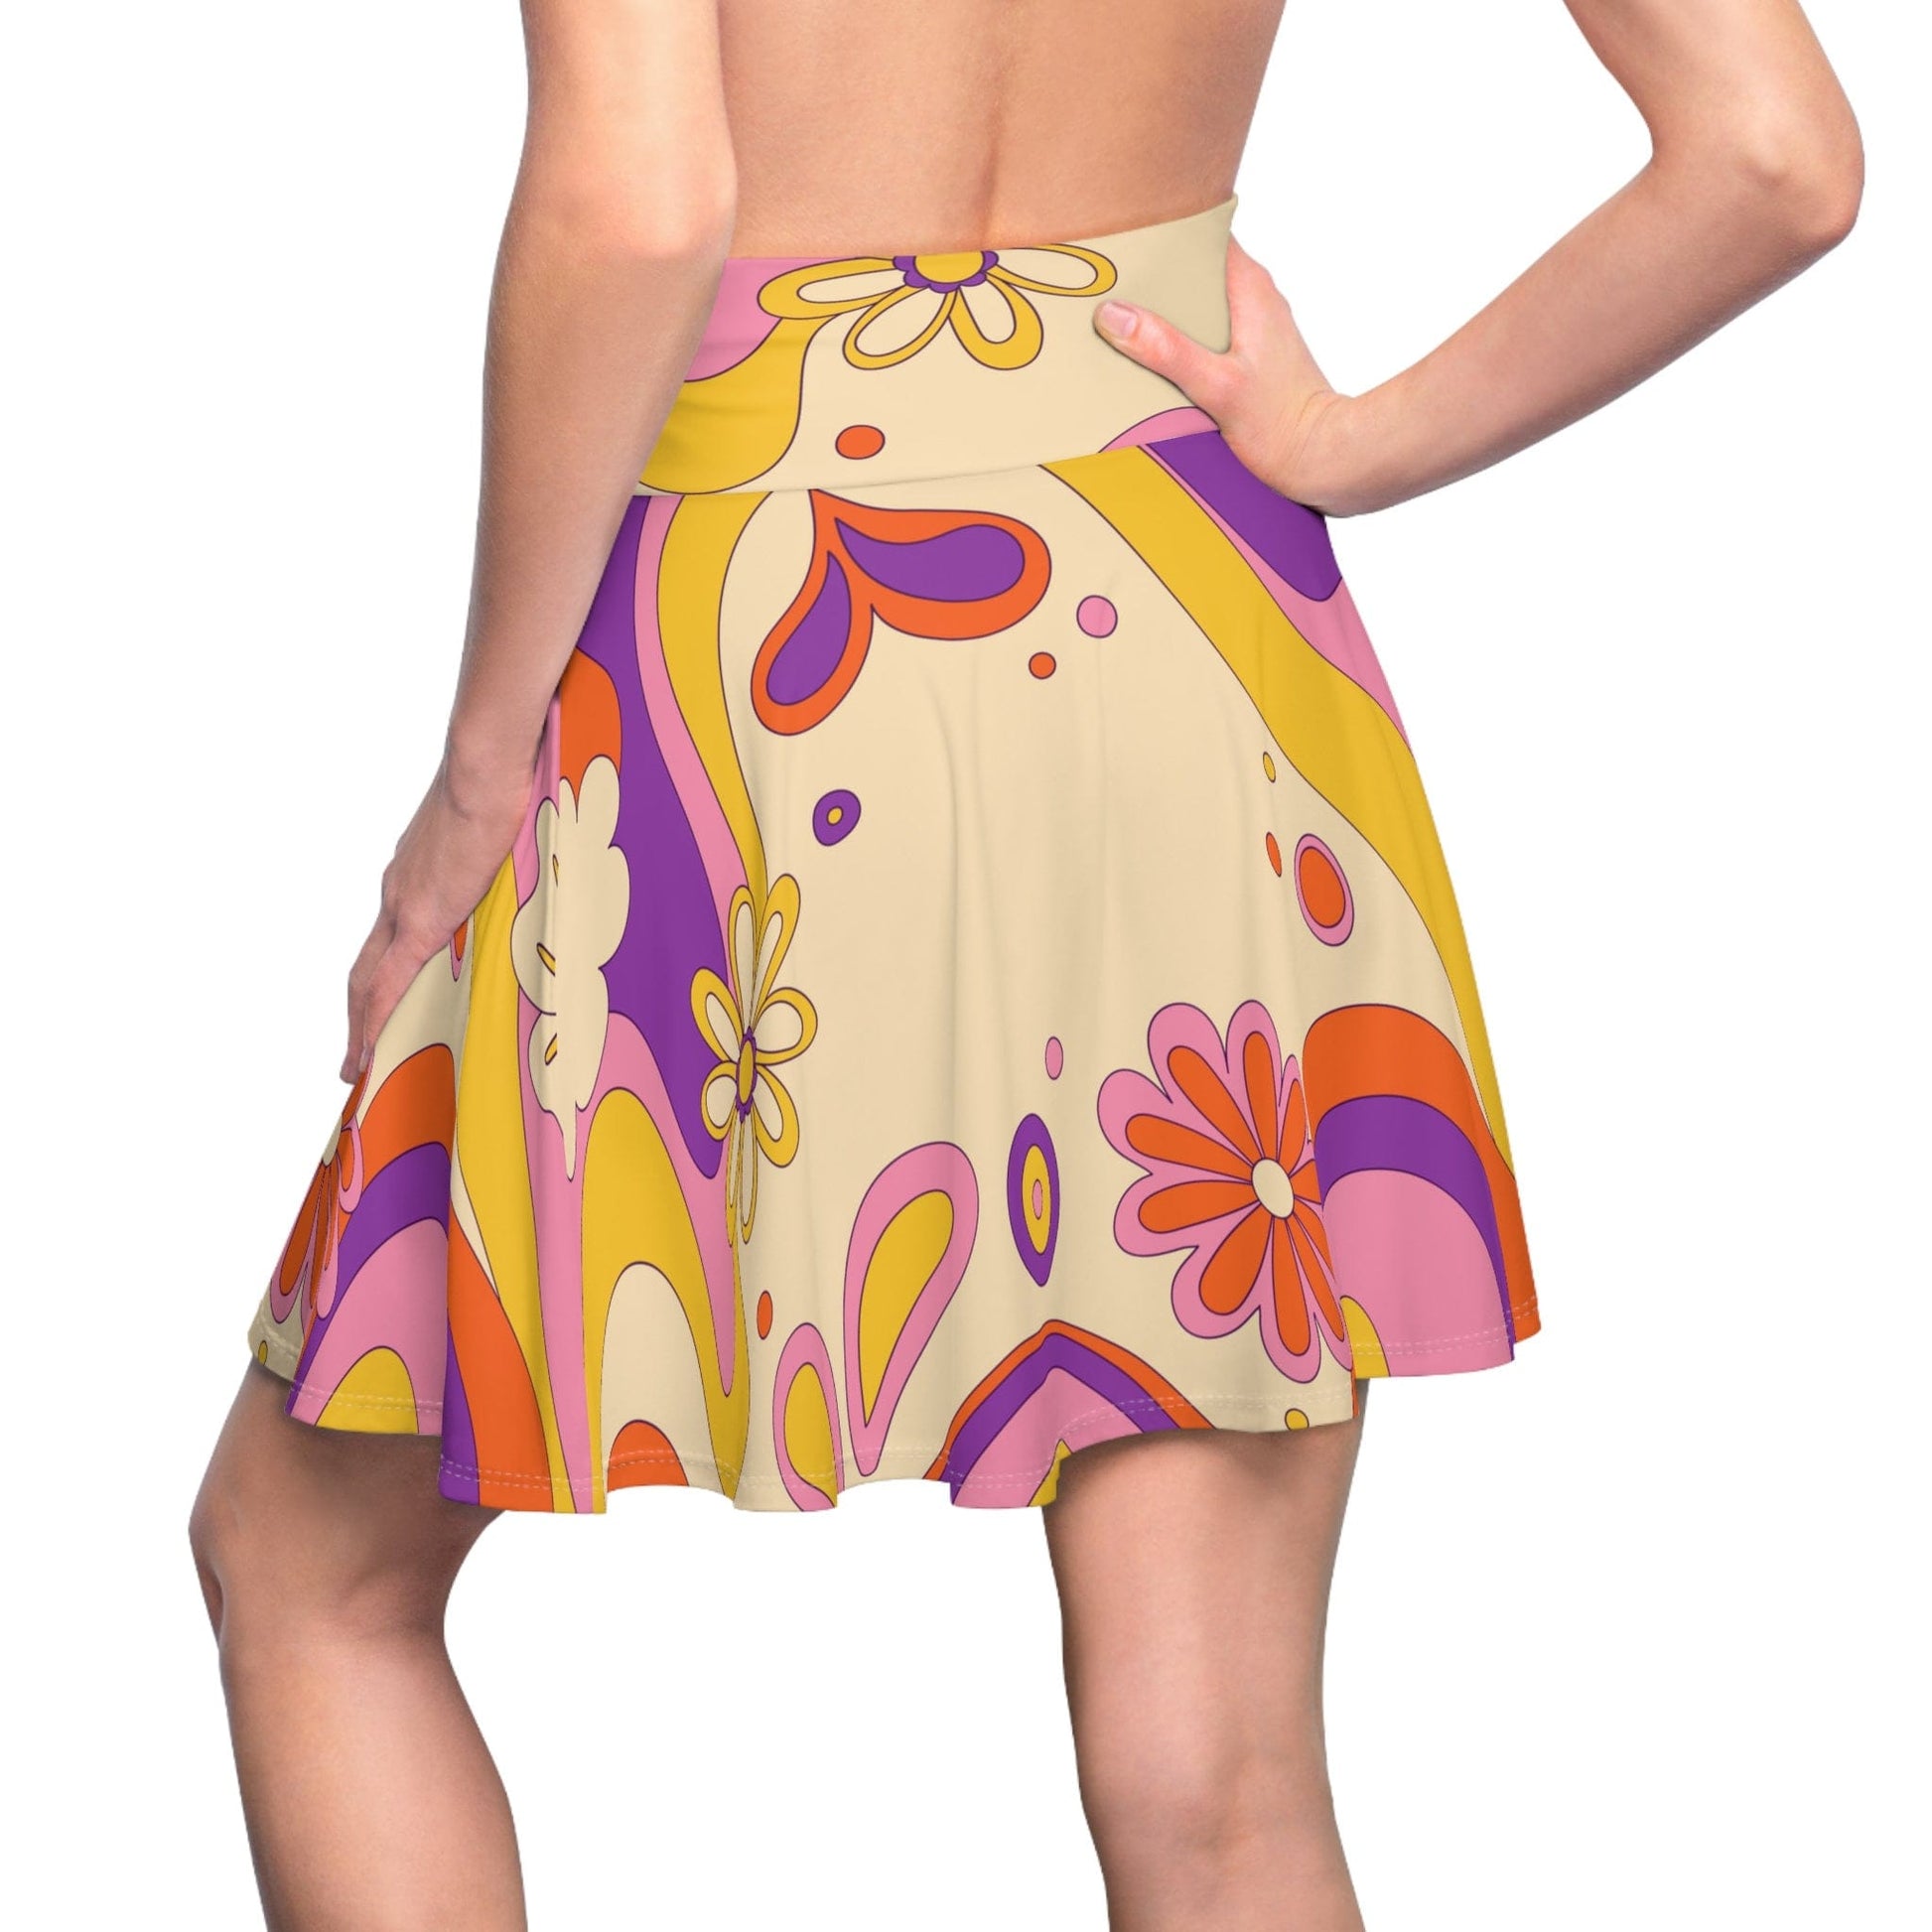 Kate McEnroe New York 60s, 70s Retro Flower Power Custom Women's Skater Skirt in Mid Century Modern Boho Shades of Beige, Burnt Orange, Mustard Yellow and Pink Skater Skirts S 21474881676877458734